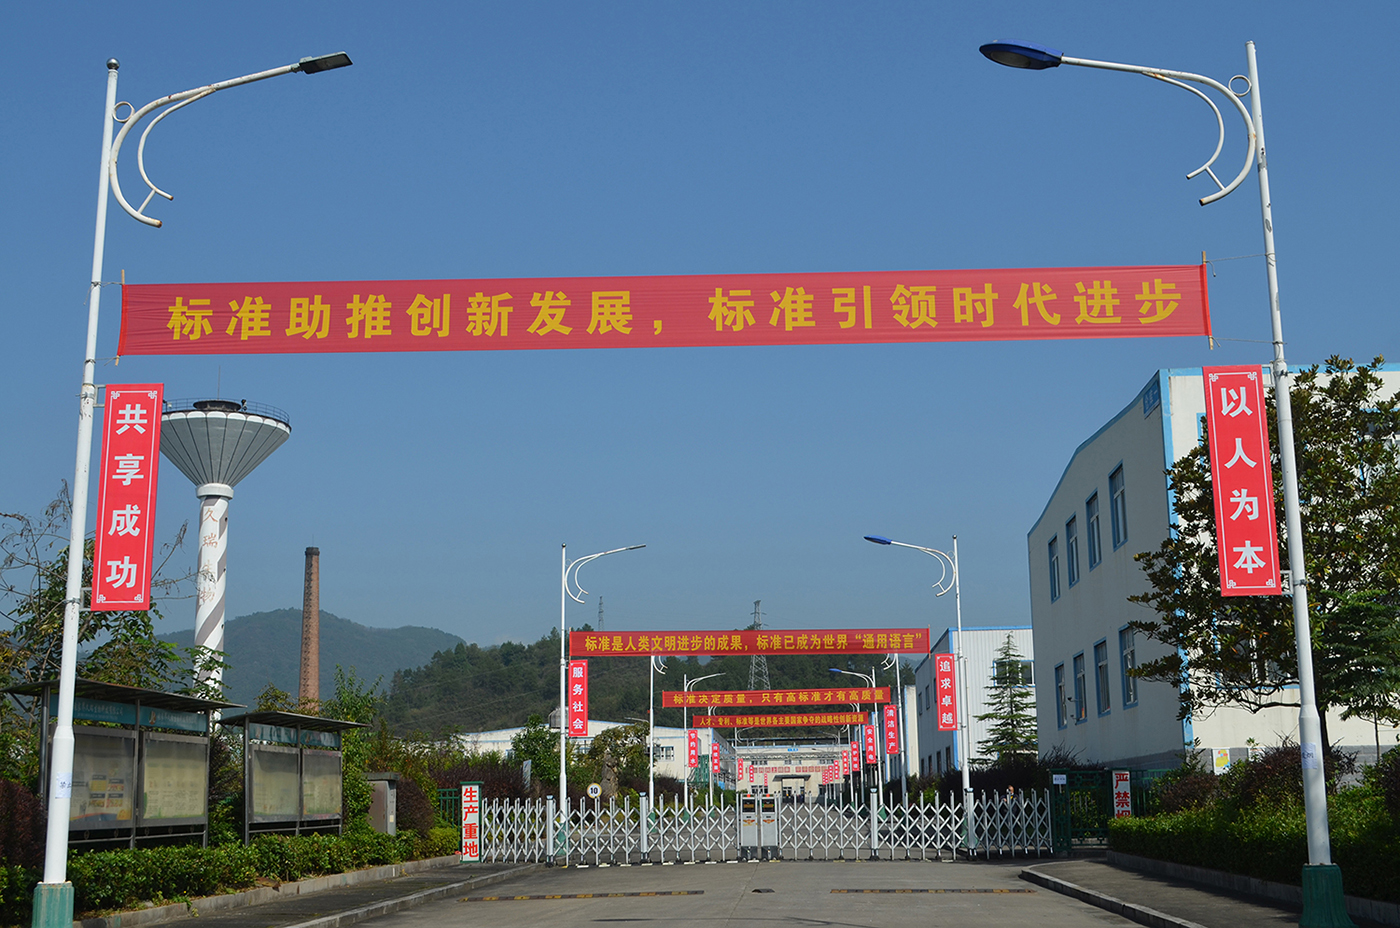 湖南省新兴优势产业标准化试点 “五倍子系列产品创新标准化试点”项目通过验收